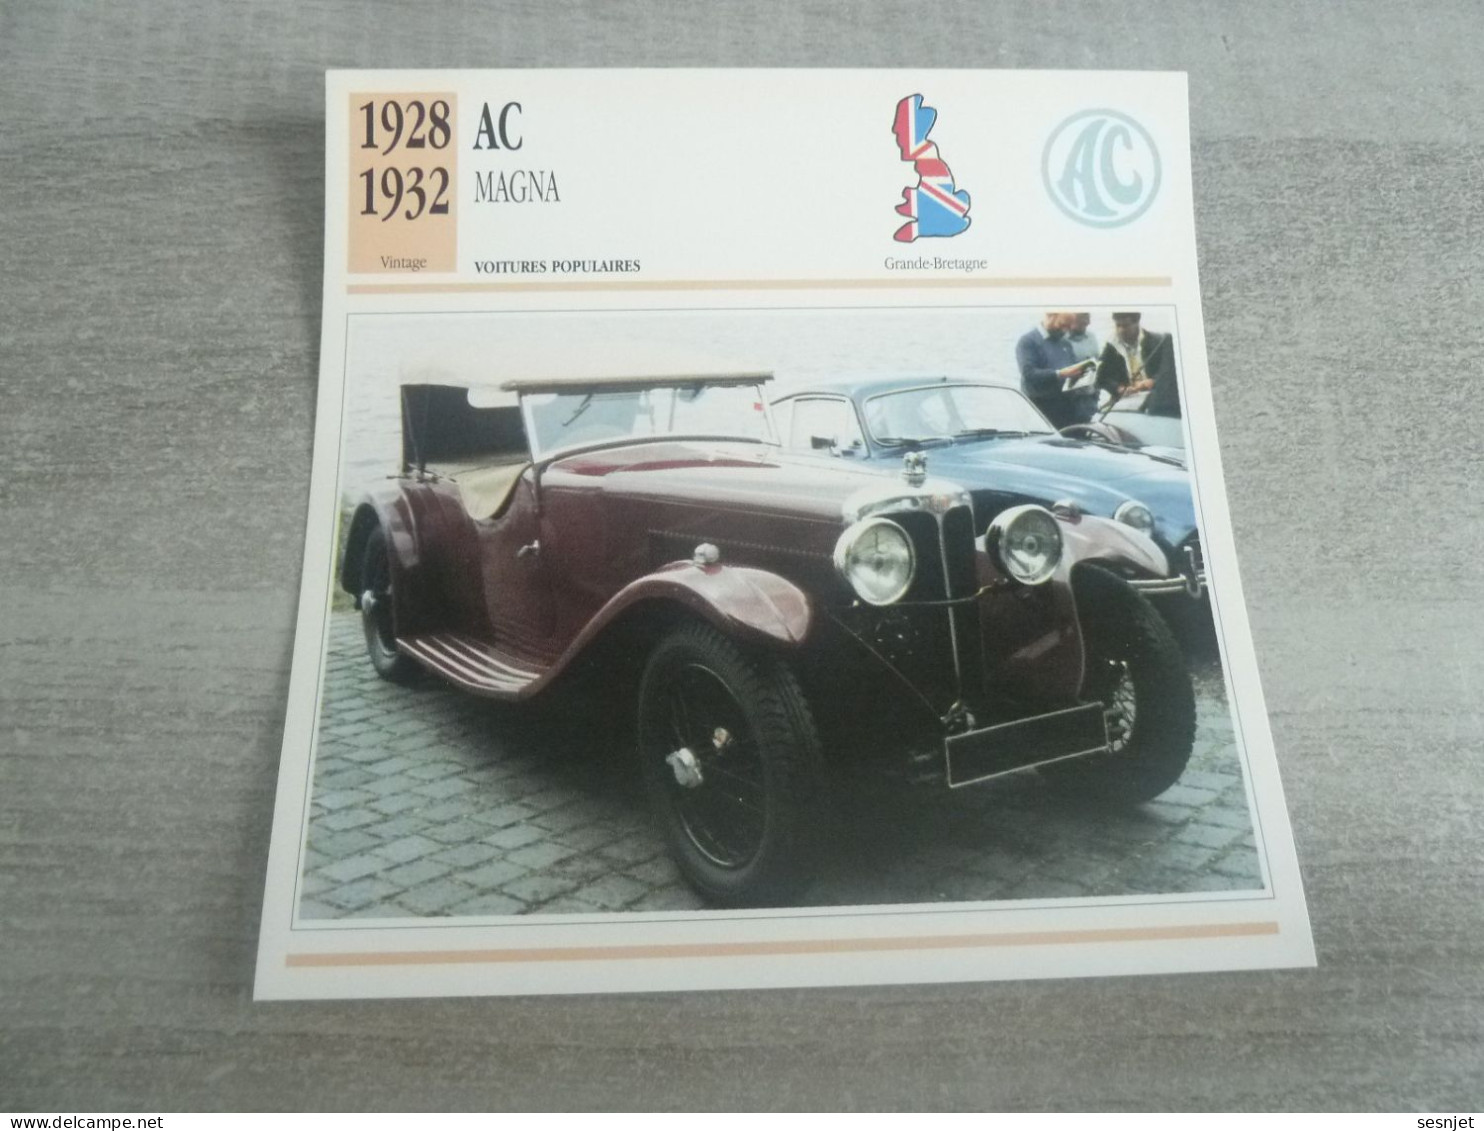 1928 -1932 - Voitures Populaires - Ac Magna - Moteur Six Cylindres - Grande-Bretagne - Fiche Technique - - Passenger Cars